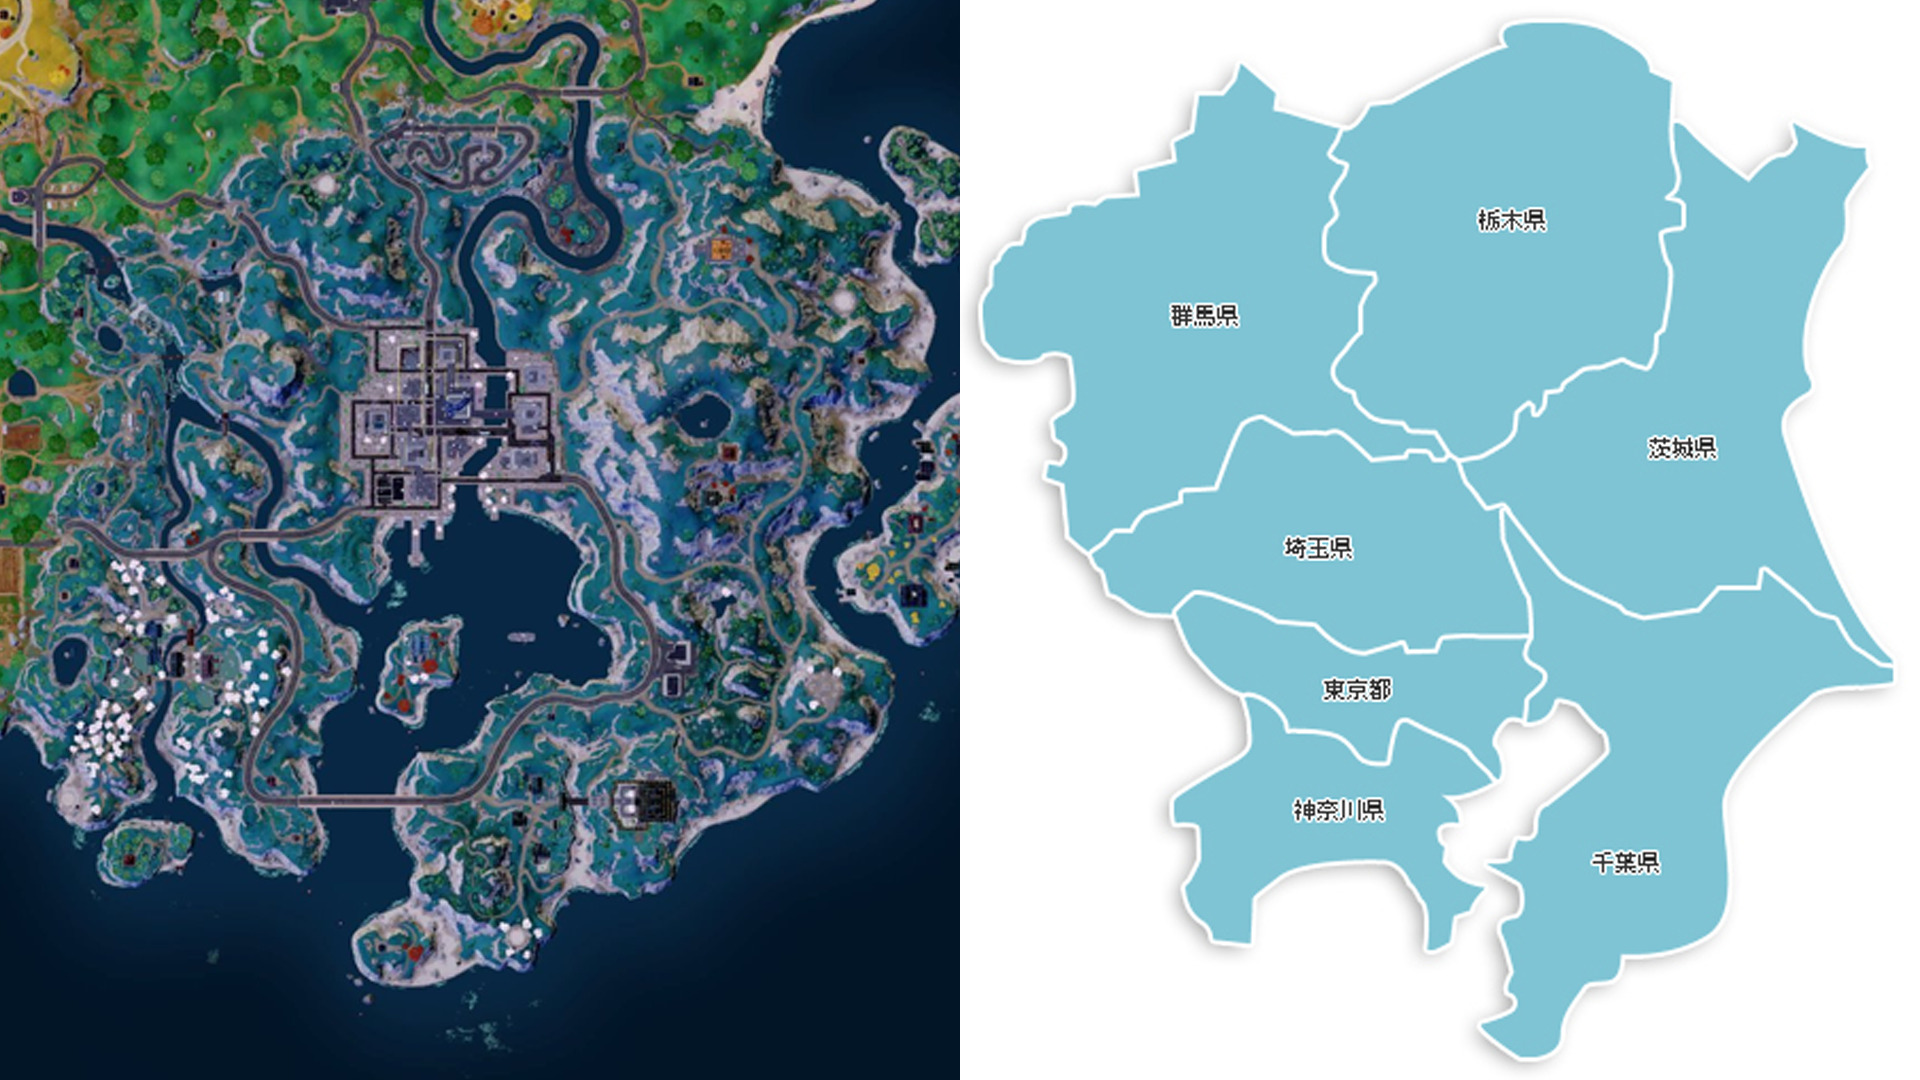 【雑談】新たに追加されたマップが関東地方に似ている件について...w